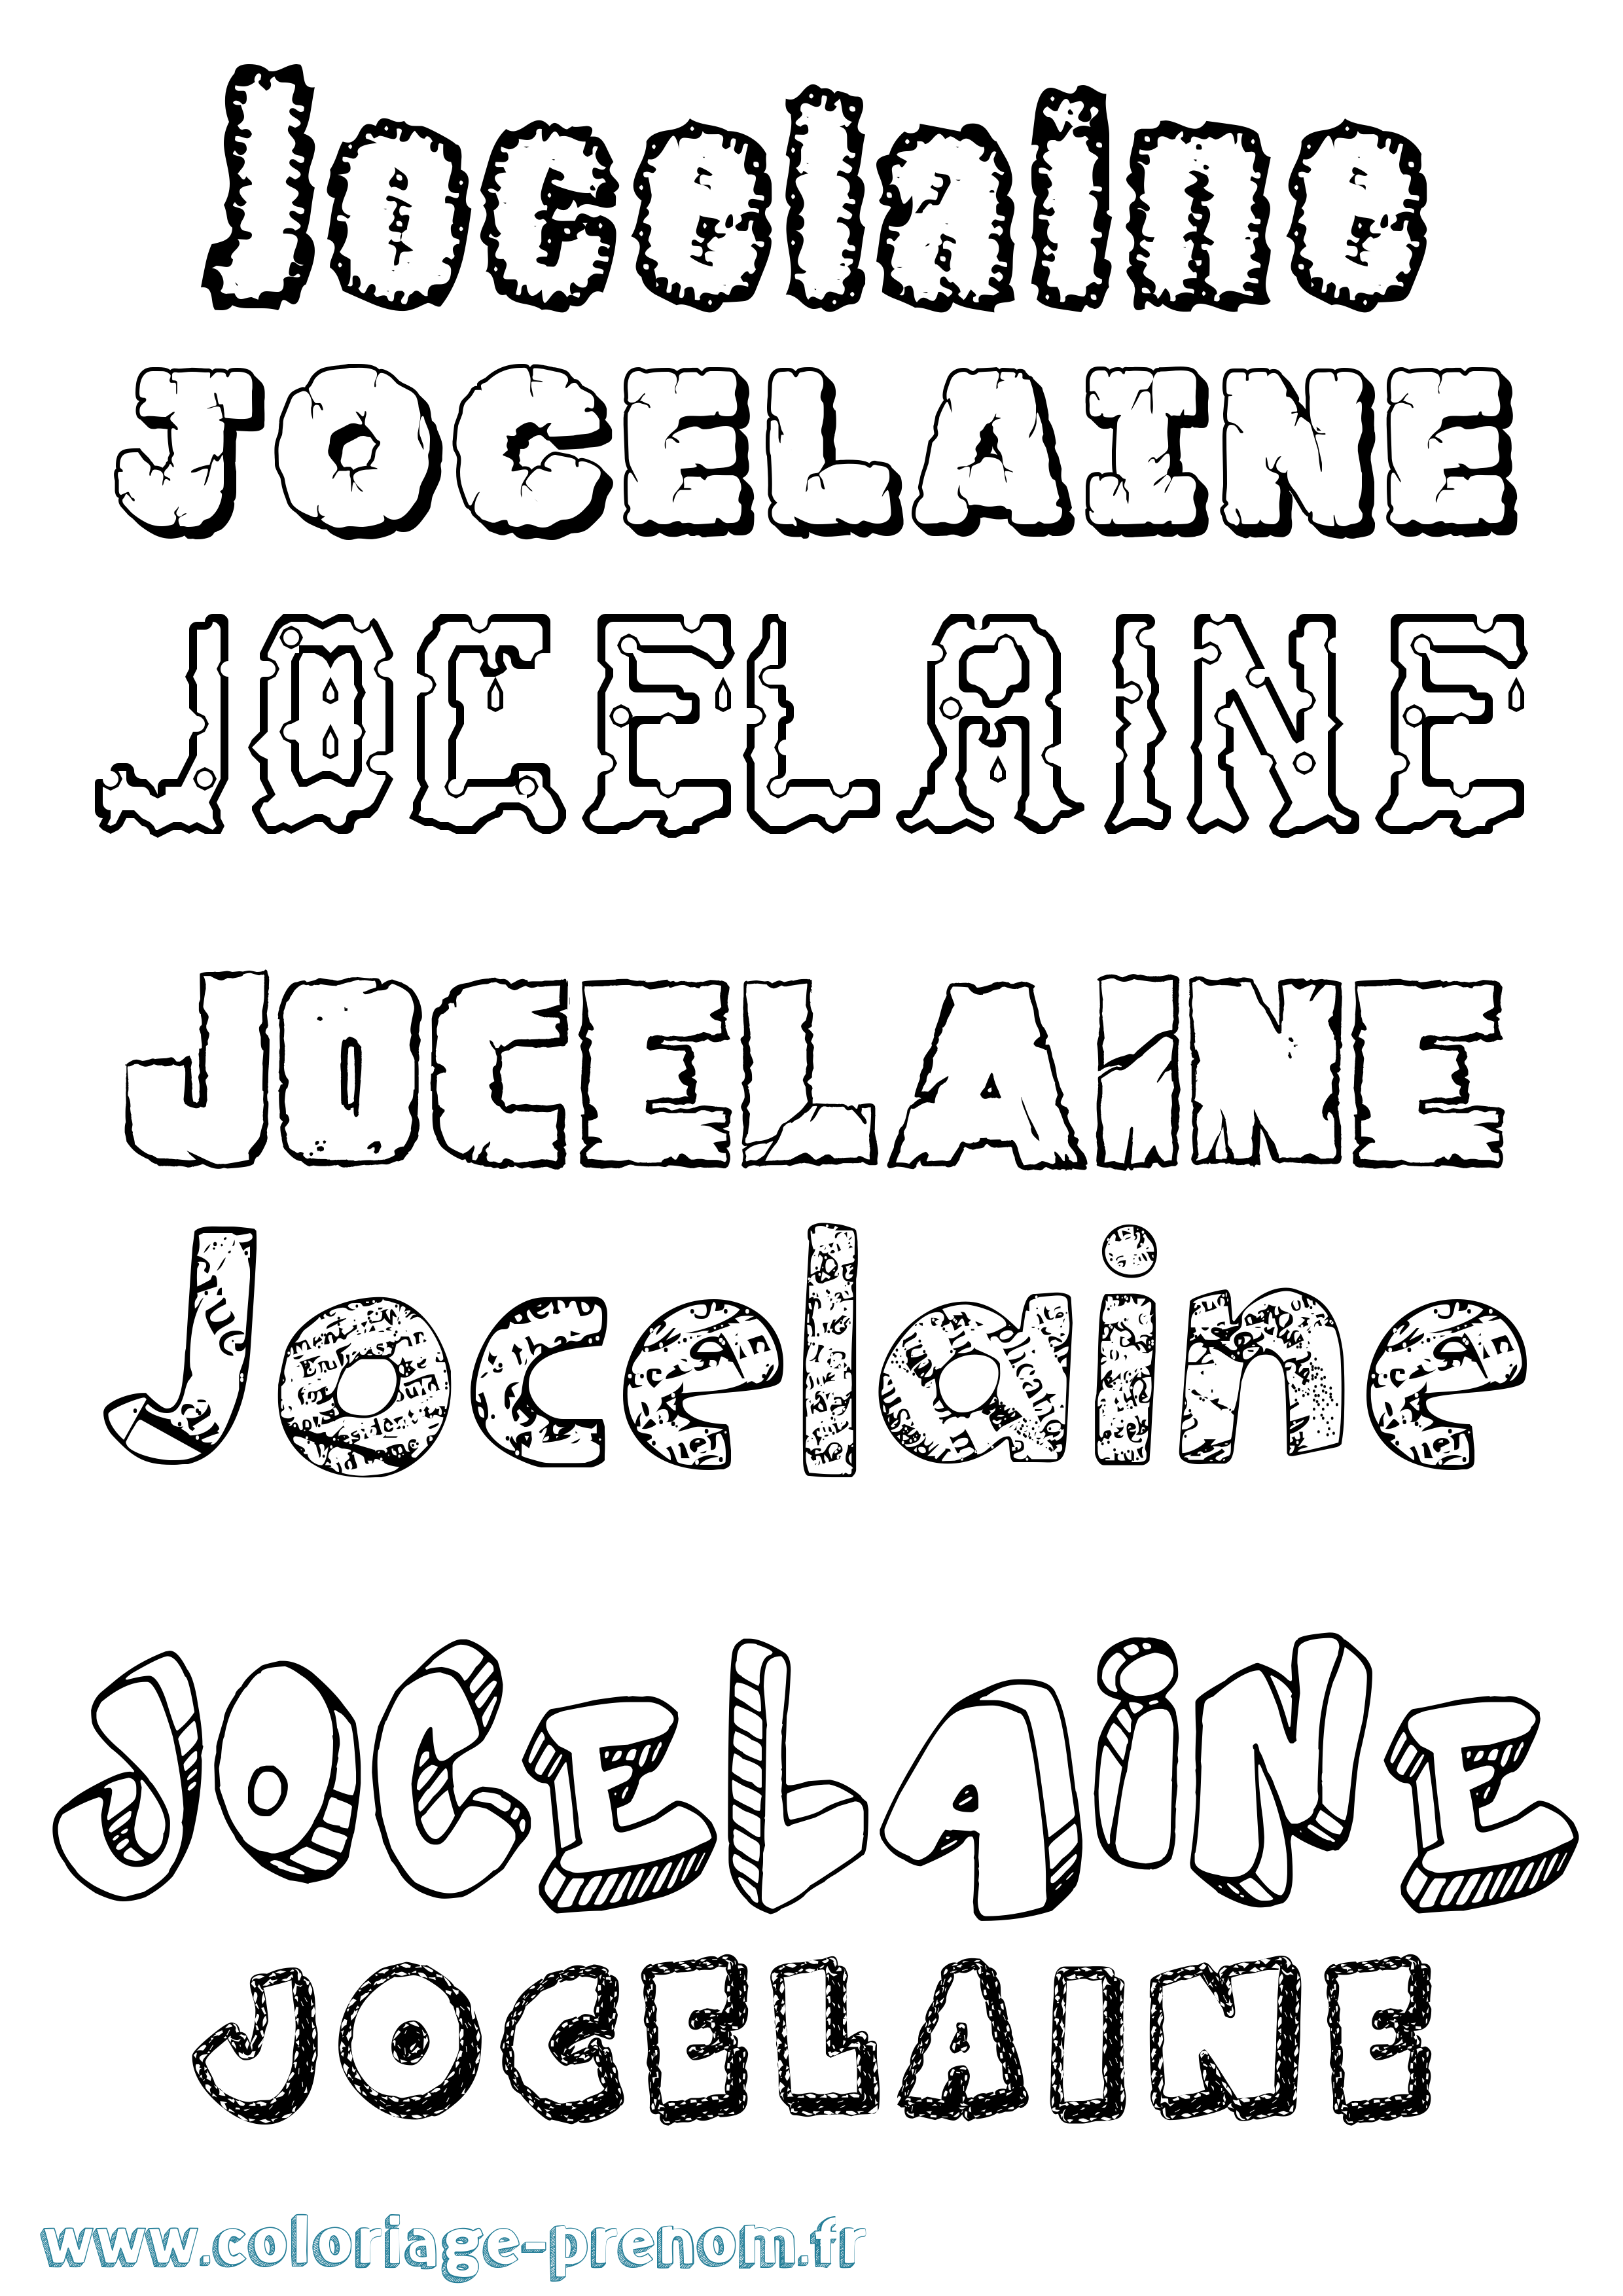 Coloriage prénom Jocelaine Destructuré